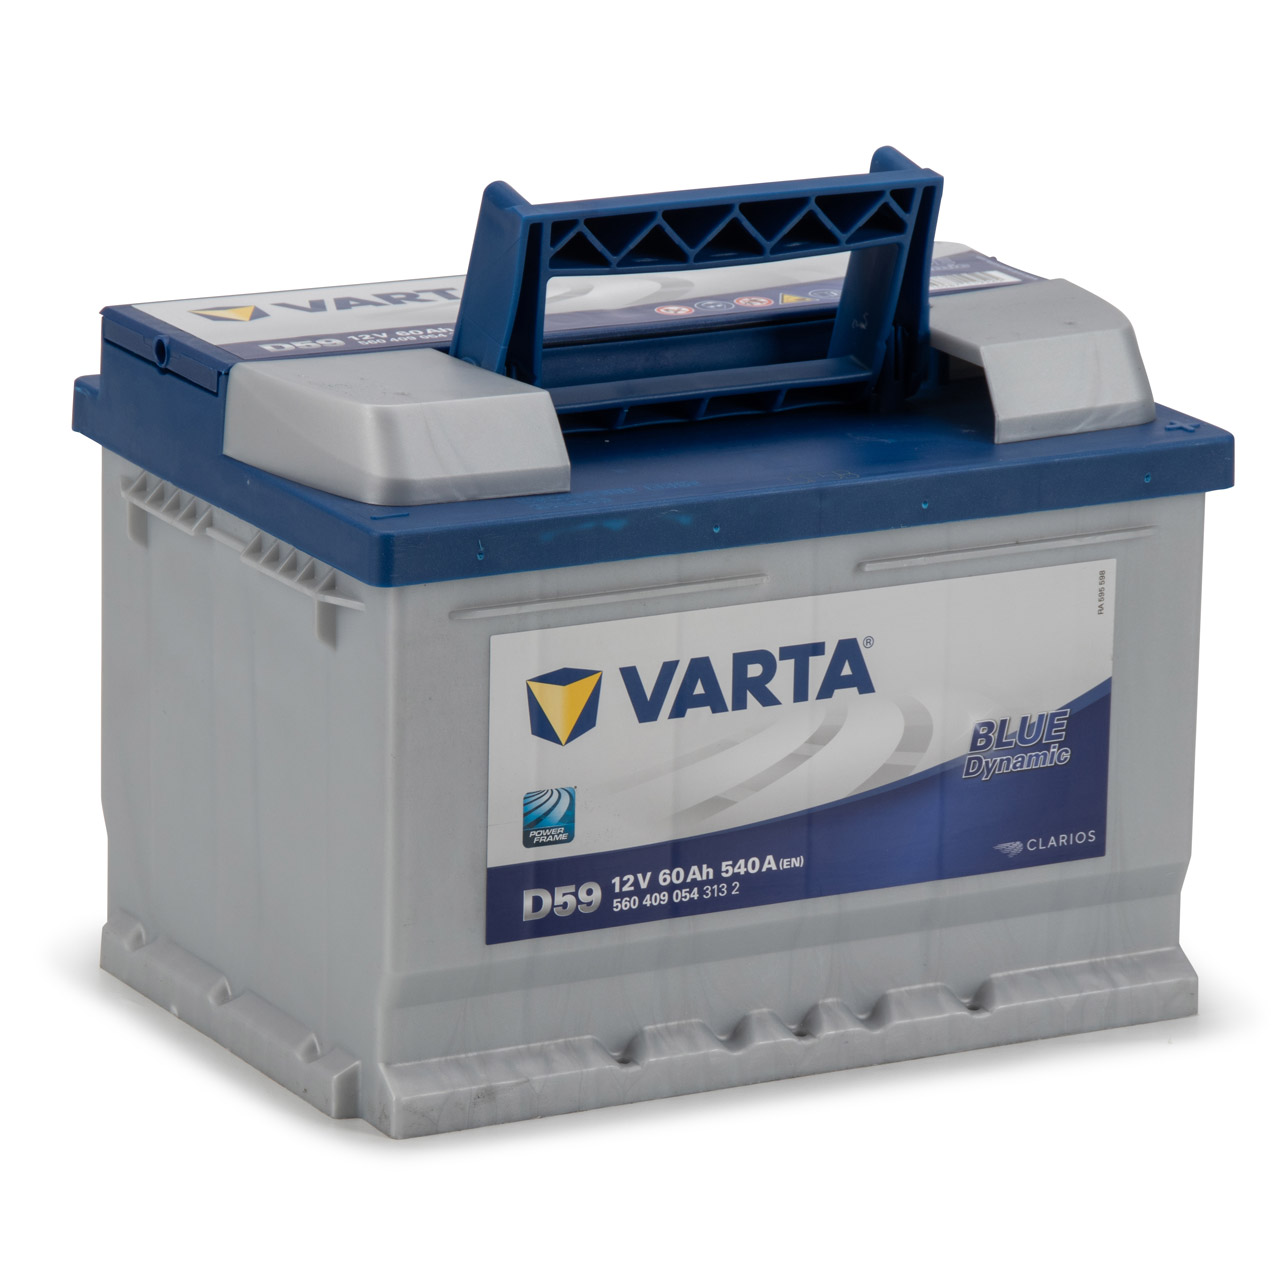 VARTA Starterbatterien / Autobatterien - 5604090543132 